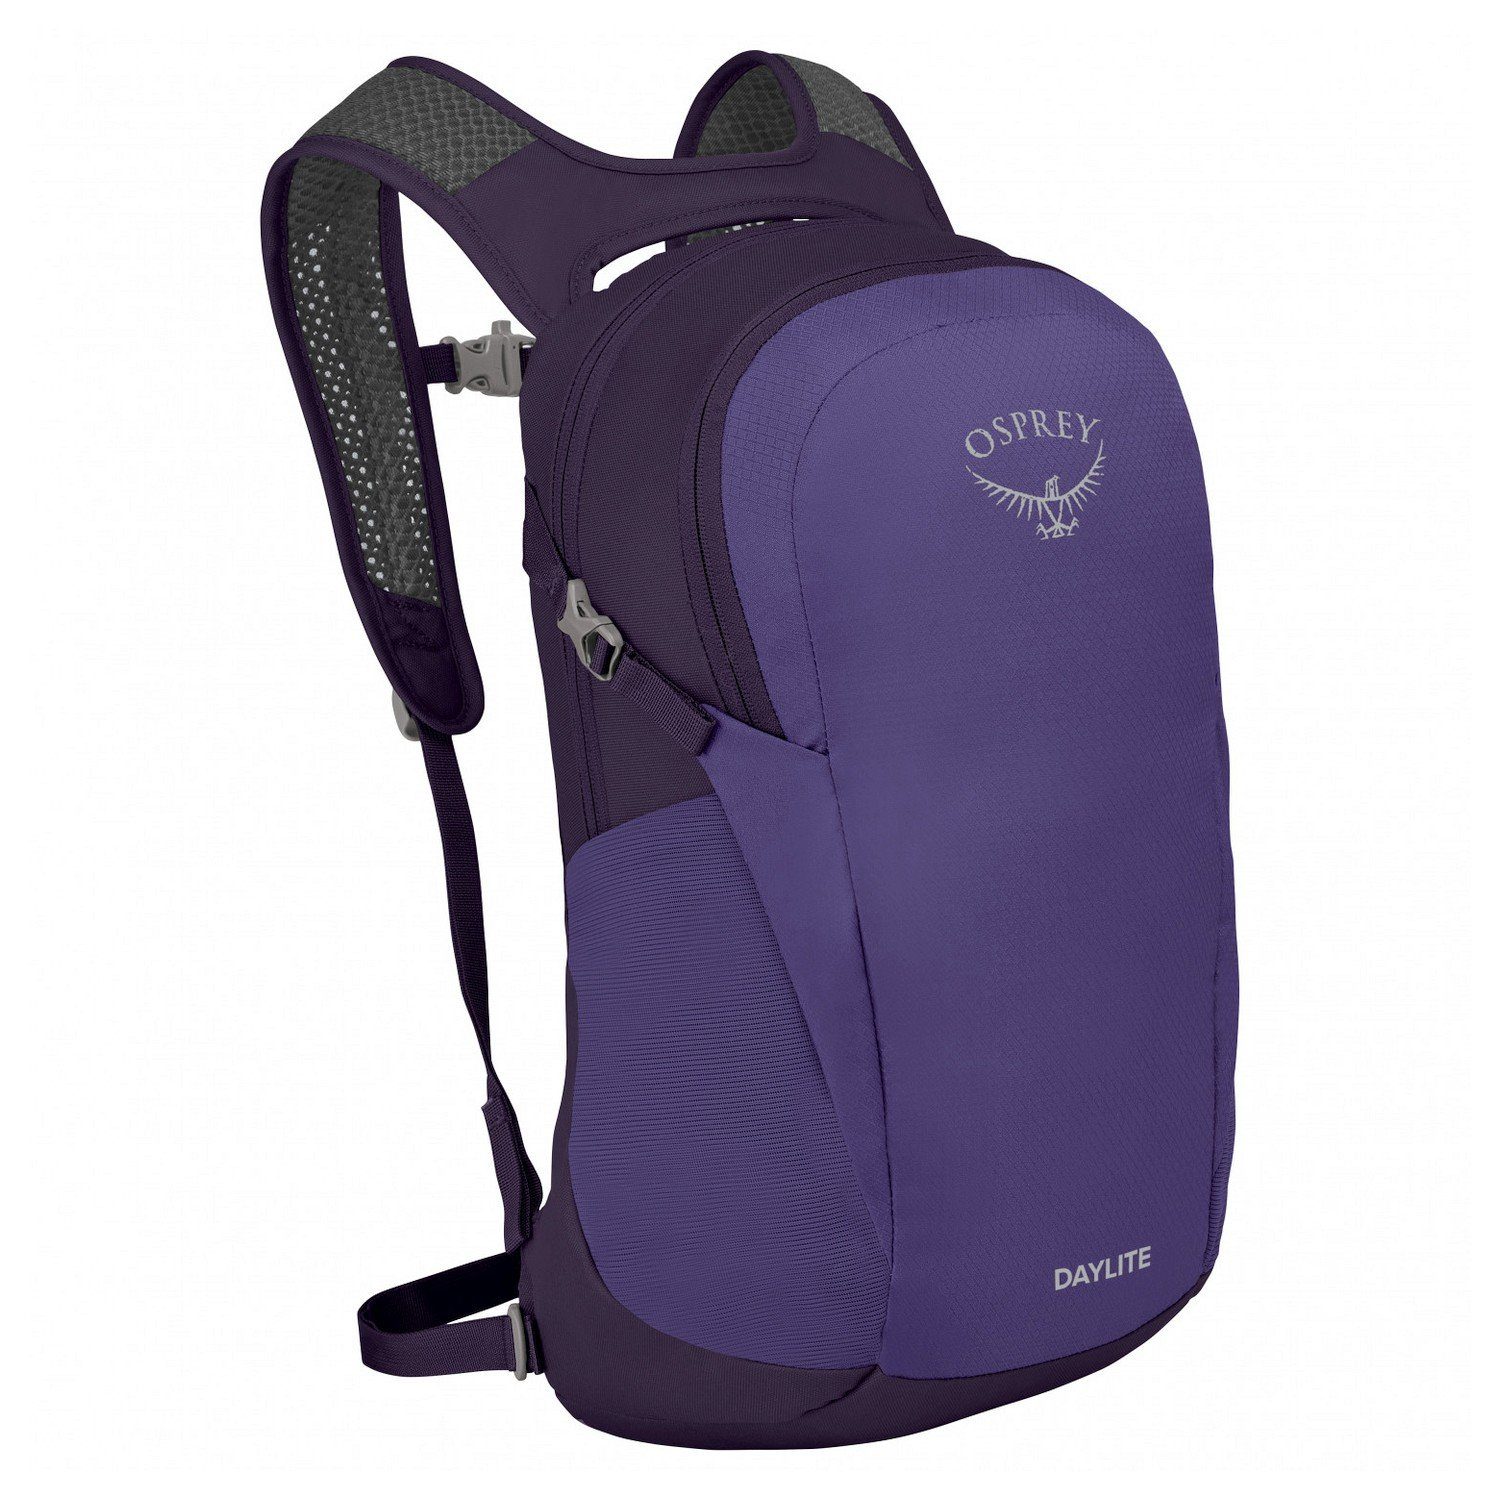 Osprey Wanderrucksack Daylite Daypack - Rucksack 48 cm dream purple